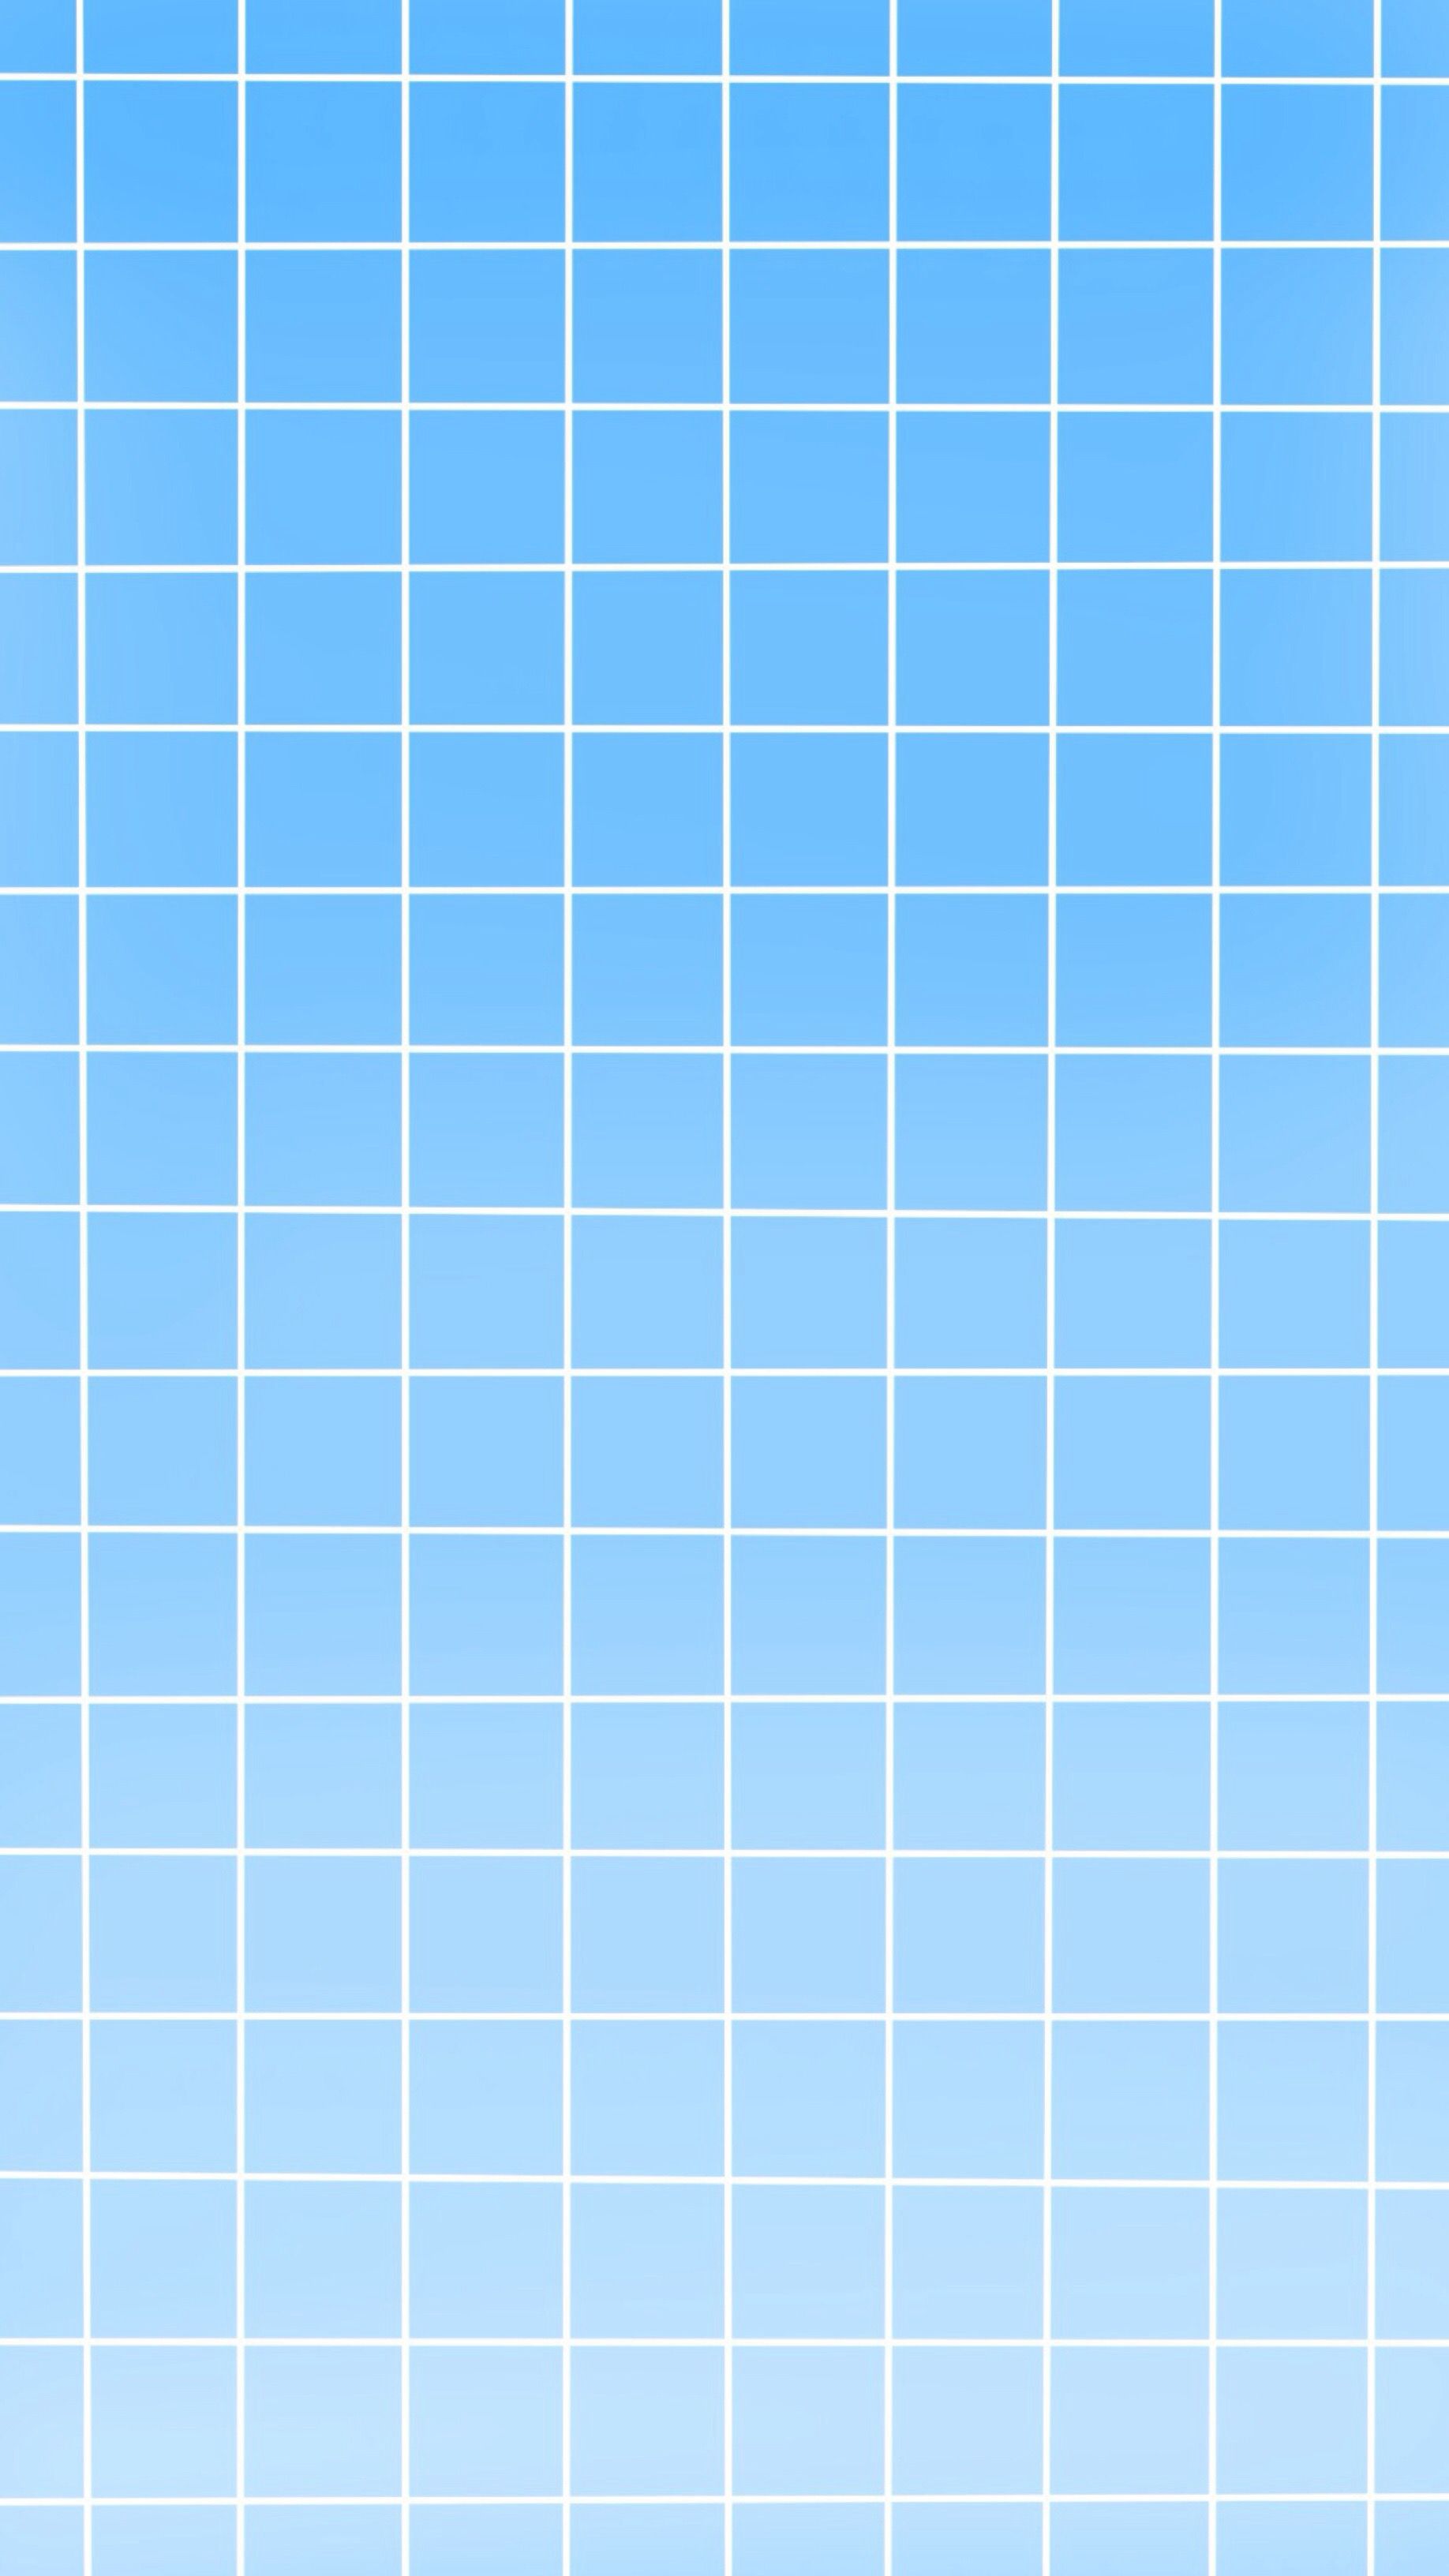 Với hình nền lưới màu xanh dương tuyệt đẹp trên WallpaperDog, bạn sẽ không thể rời mắt khỏi màn hình điện thoại của mình. Hình ảnh này sẽ đem đến cho bạn cảm giác tươi mới và thư giãn. Hãy cùng khám phá những điều tuyệt vời mà hình nền này mang lại cho bạn.